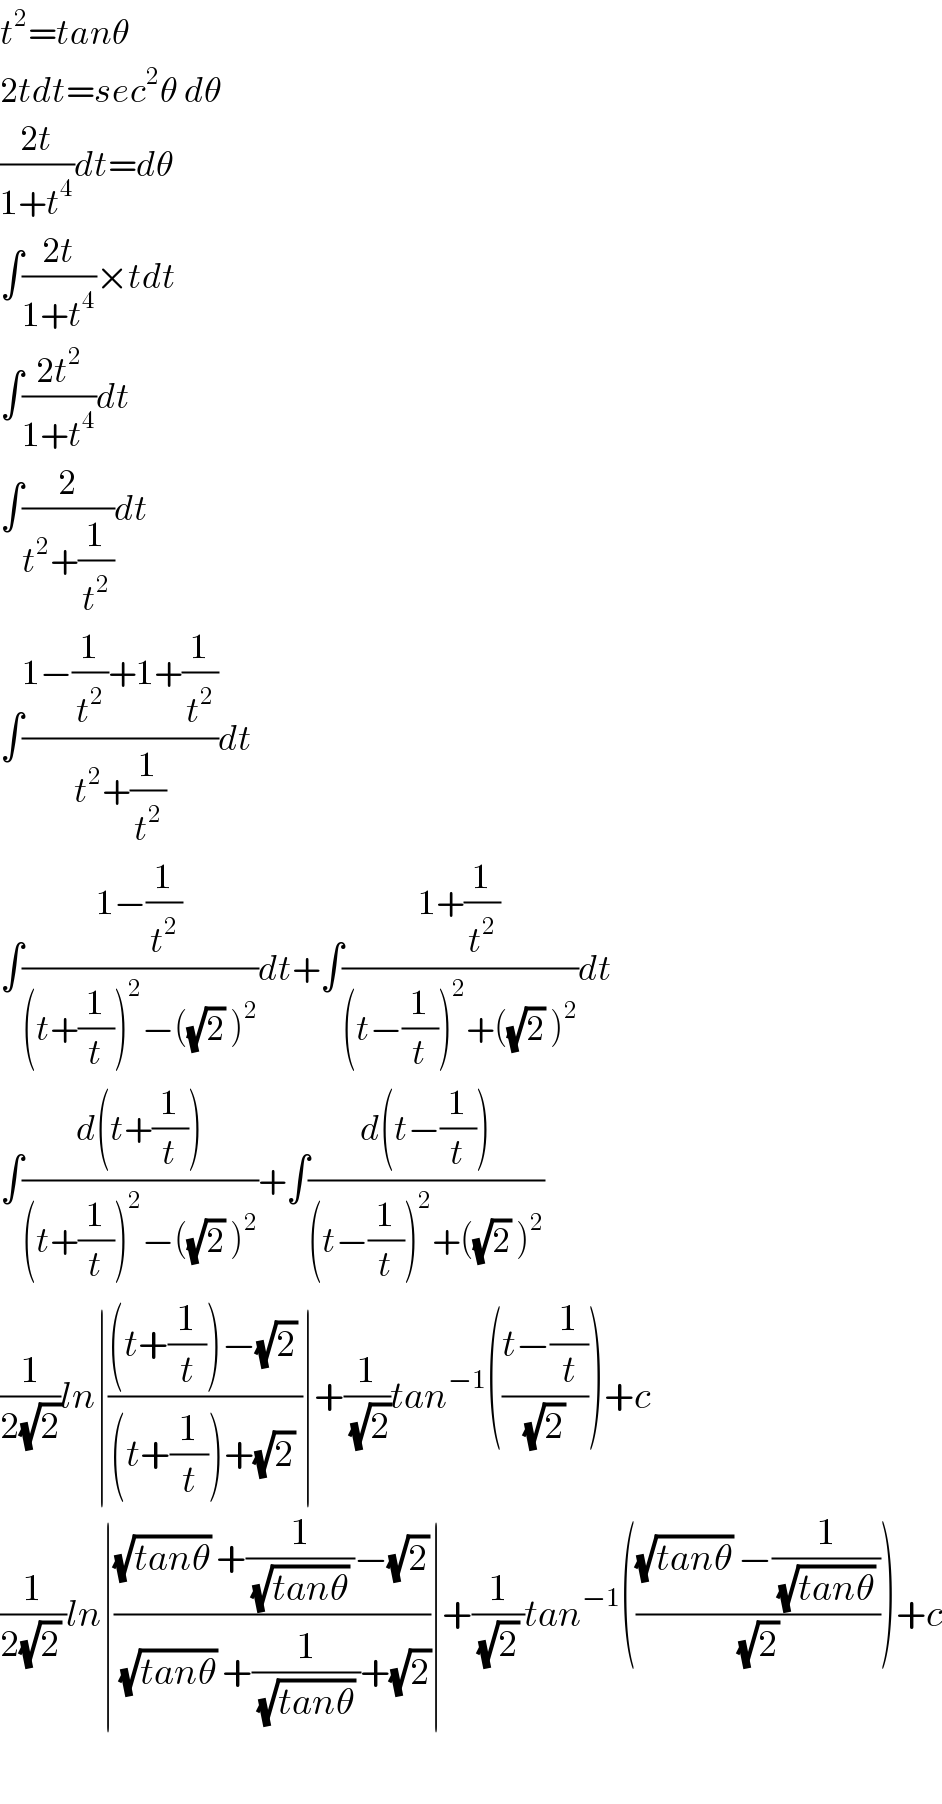 t^2 =tanθ  2tdt=sec^2 θ dθ  ((2t)/(1+t^4 ))dt=dθ  ∫((2t)/(1+t^4 ))×tdt  ∫((2t^2 )/(1+t^4 ))dt  ∫(2/(t^2 +(1/t^2 )))dt  ∫((1−(1/t^2 )+1+(1/t^2 ))/(t^2 +(1/t^2 )))dt  ∫((1−(1/t^2 ))/((t+(1/t))^2 −((√2) )^2 ))dt+∫((1+(1/t^2 ))/((t−(1/t))^2 +((√2) )^2 ))dt  ∫((d(t+(1/t)))/((t+(1/t))^2 −((√2) )^2 ))+∫((d(t−(1/t)))/((t−(1/t))^2 +((√2) )^2 ))  (1/(2(√2)))ln∣(((t+(1/t))−(√2) )/((t+(1/t))+(√2) ))∣+(1/(√2))tan^(−1) (((t−(1/t))/((√2) )))+c  (1/(2(√2) ))ln∣(((√(tanθ)) +(1/((√(tanθ)) ))−(√2))/((√(tanθ)) +(1/((√(tanθ)) ))+(√2)))∣+(1/((√2) ))tan^(−1) ((((√(tanθ)) −(1/((√(tanθ)) )))/((√2) )))+c    